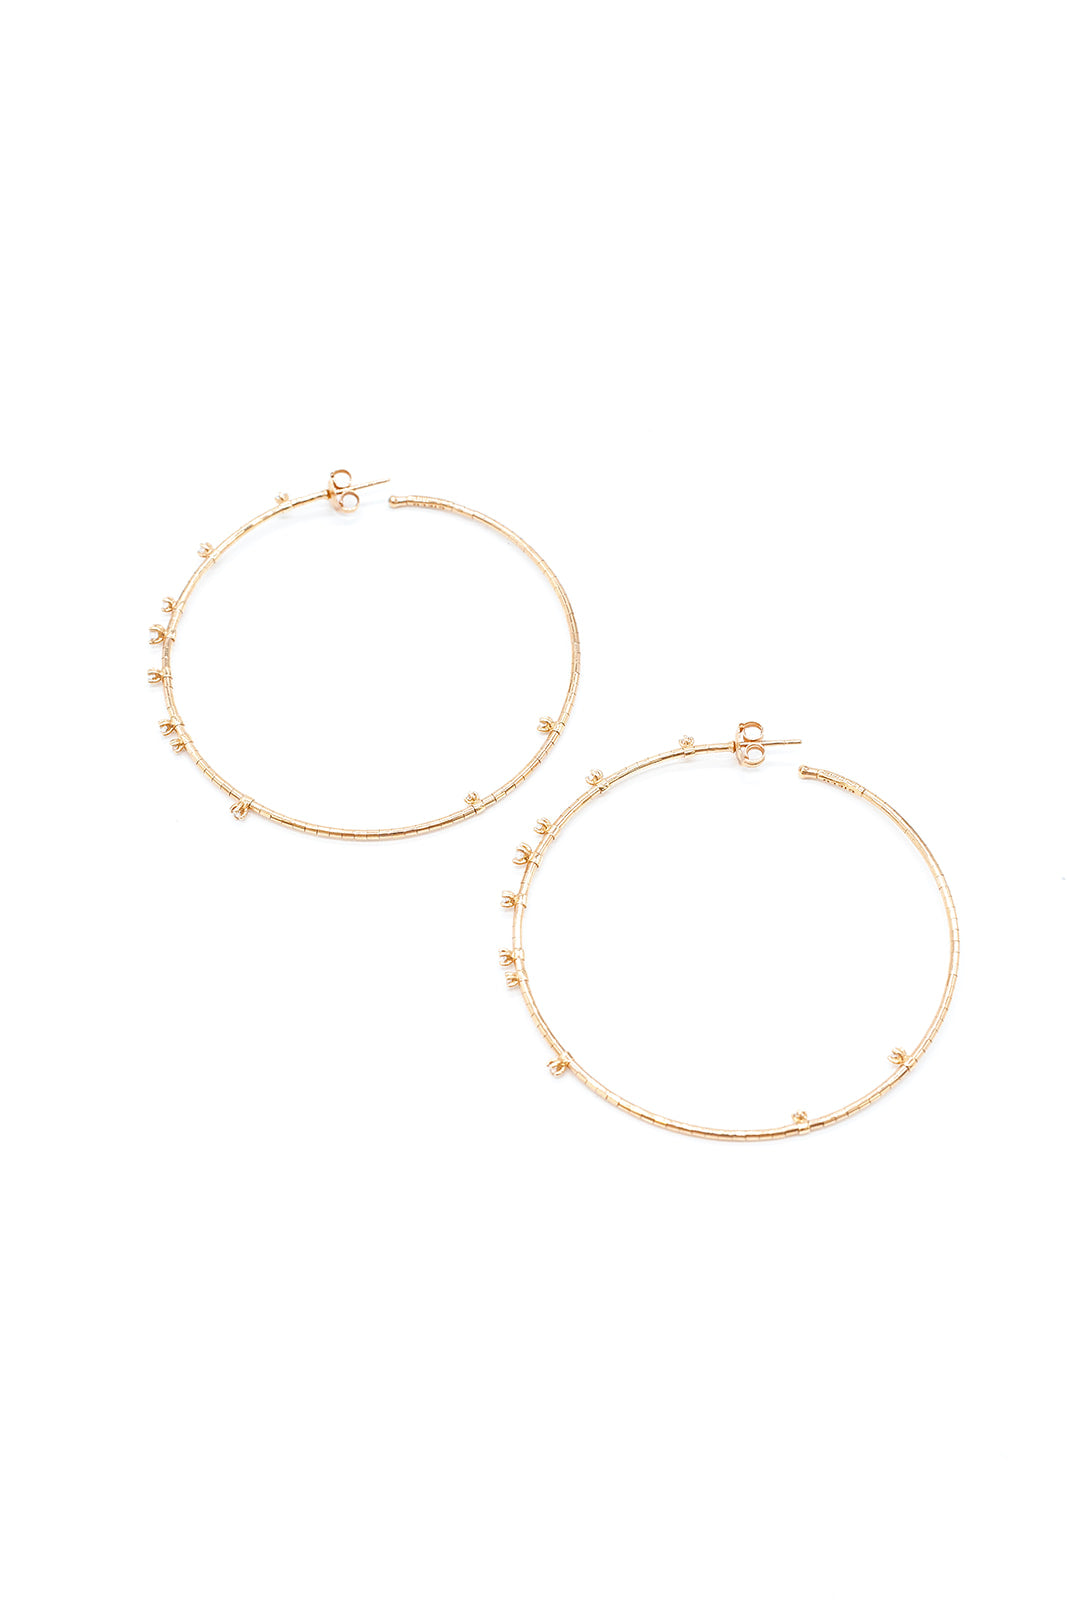 18K Rose Gold Diamond Hoop Earrings